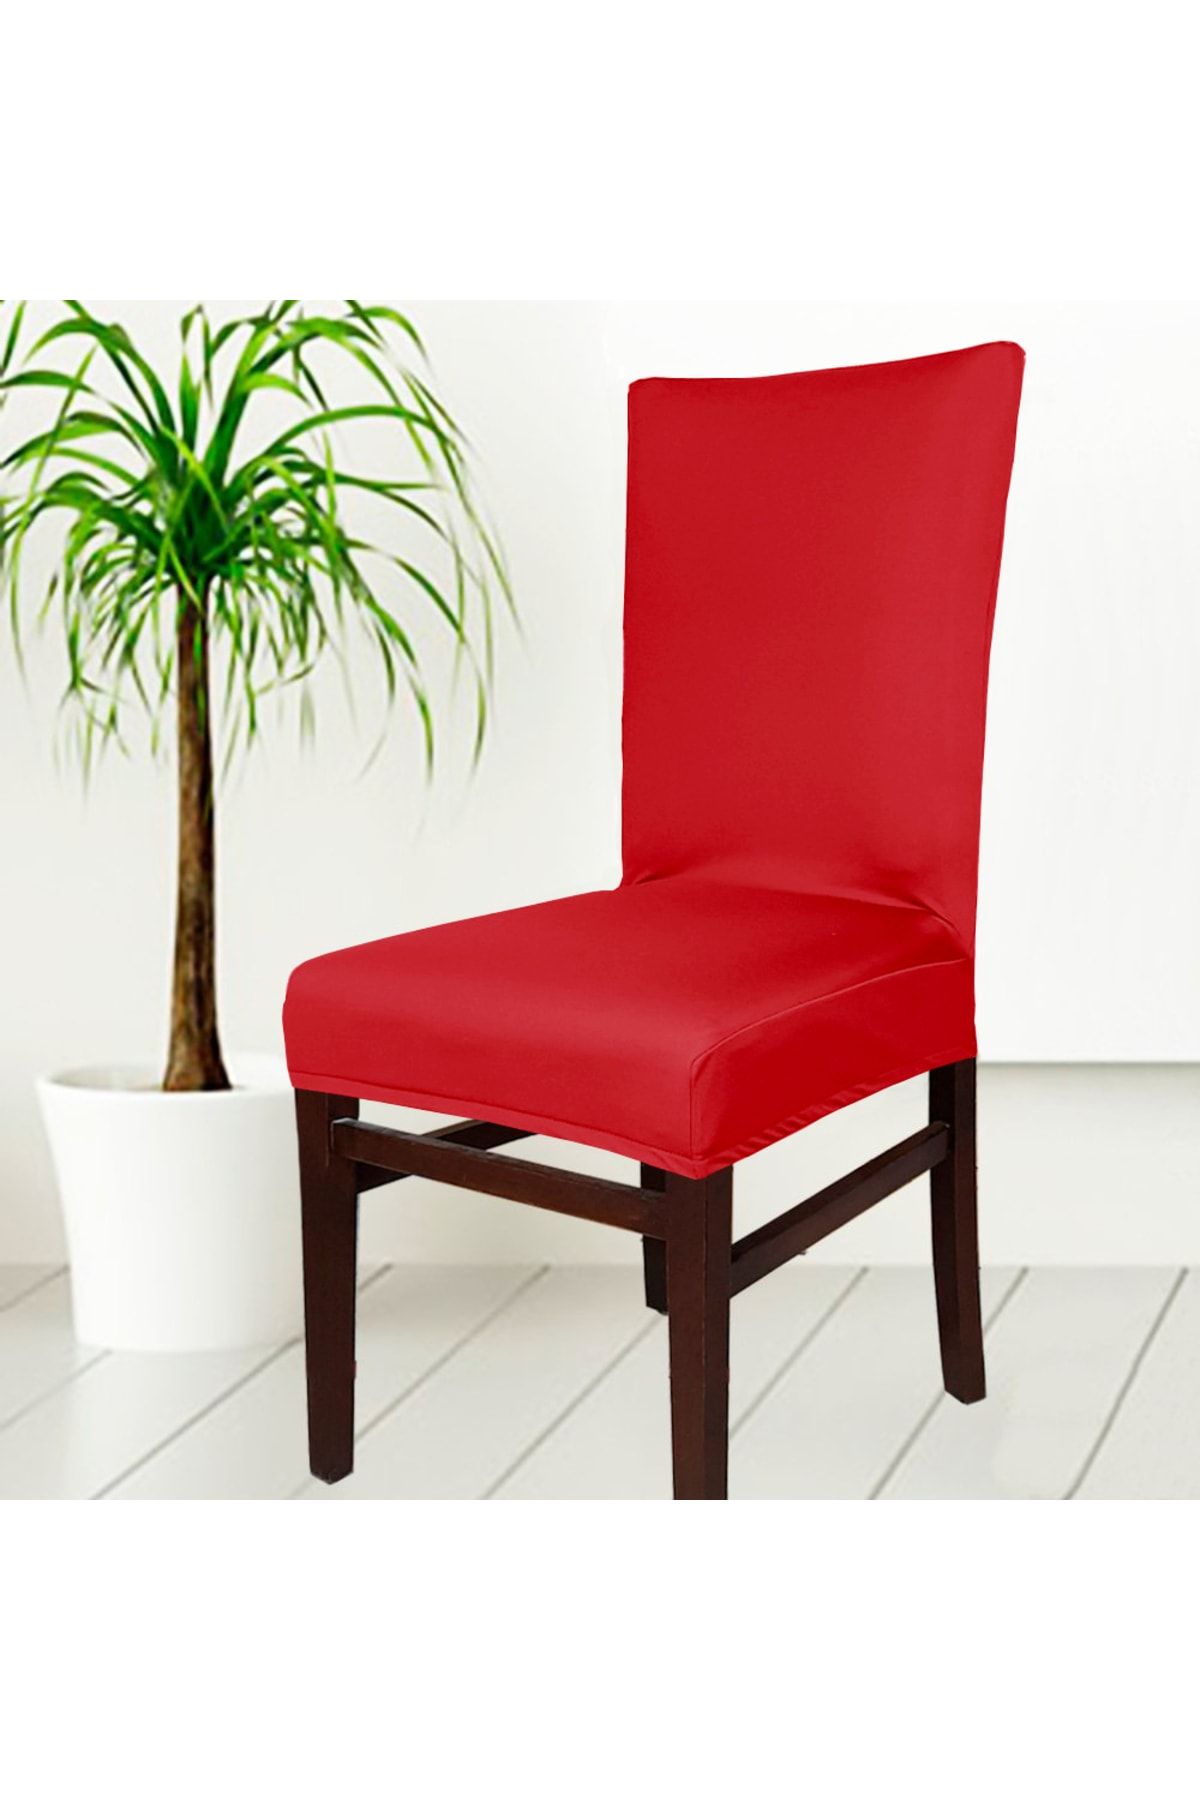 abeltrade Sandalye Kılıfı Kaliteli Mikro Kumaş Kırmızı Rengi Standart Kare Sandalyelere Uygun. 1 Li